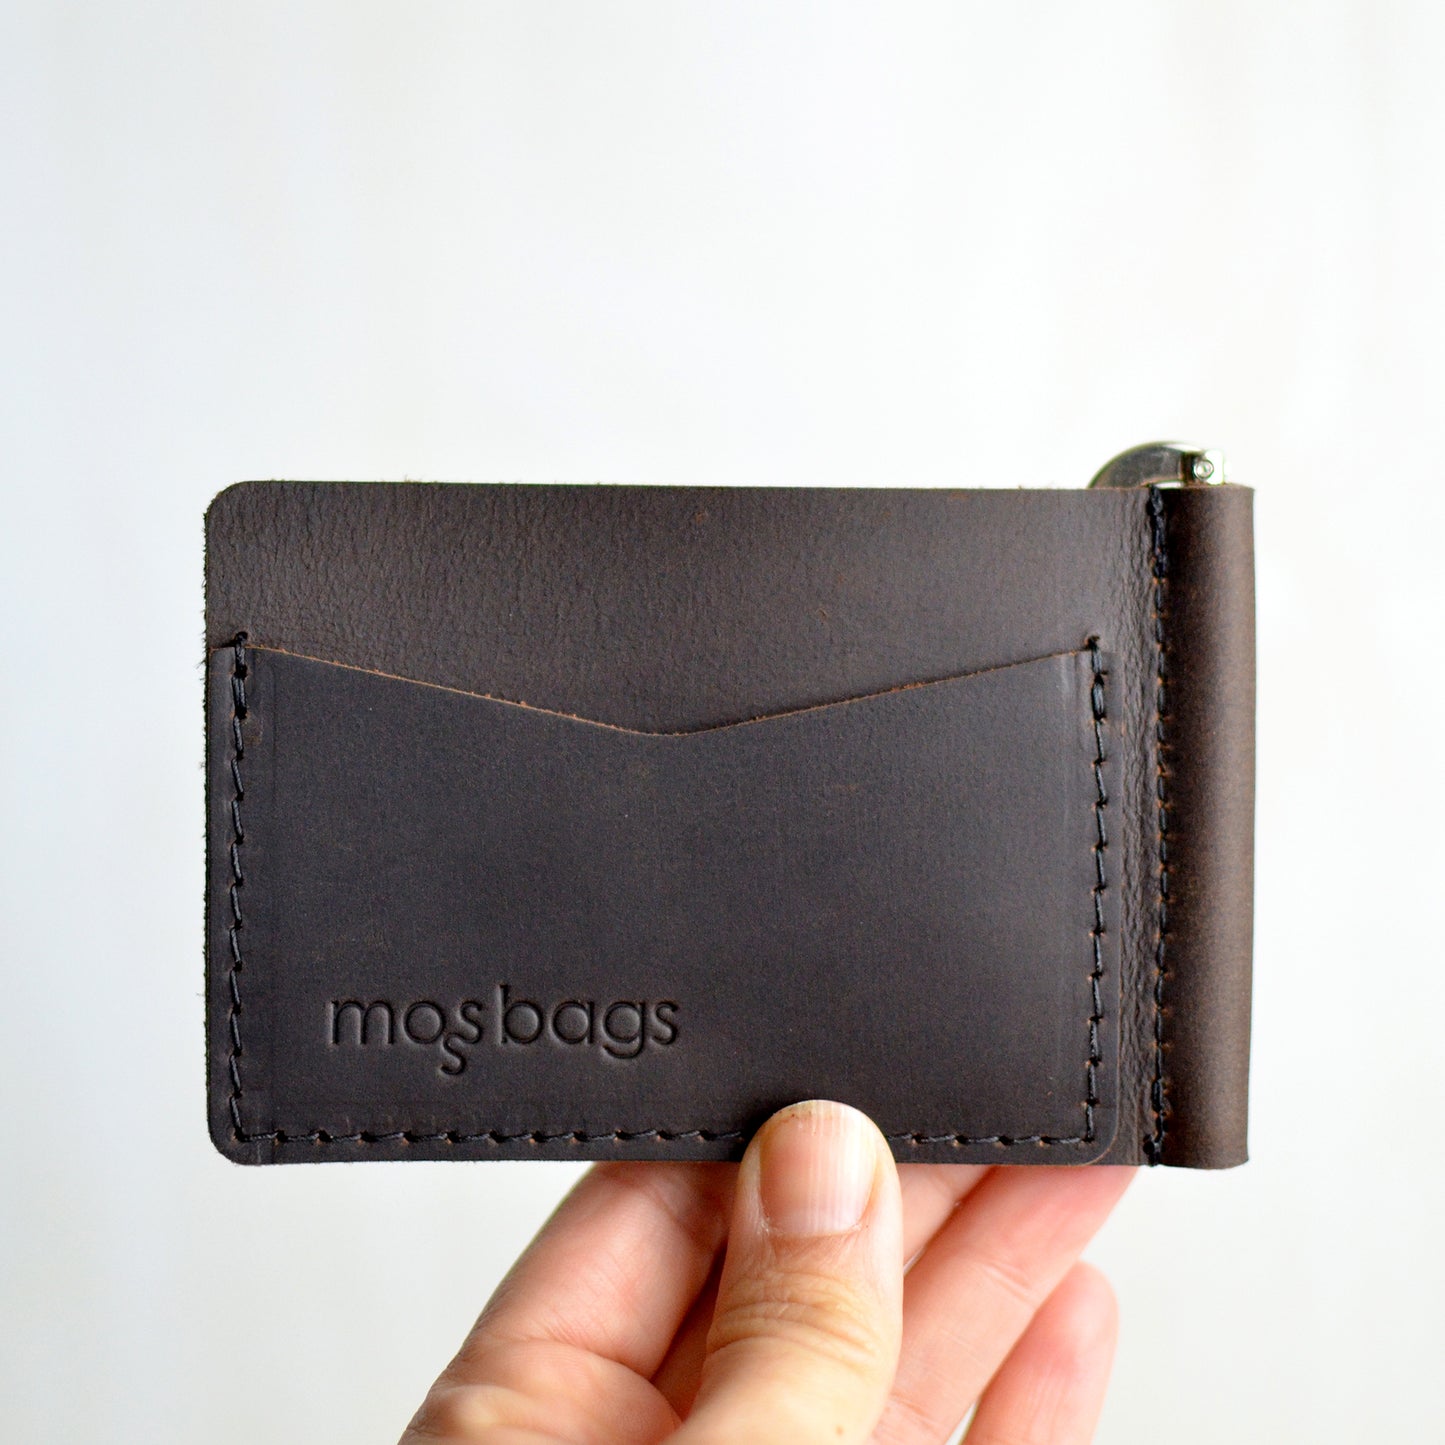 Money Clip Wallet - Dark Chocolate Brown Leather